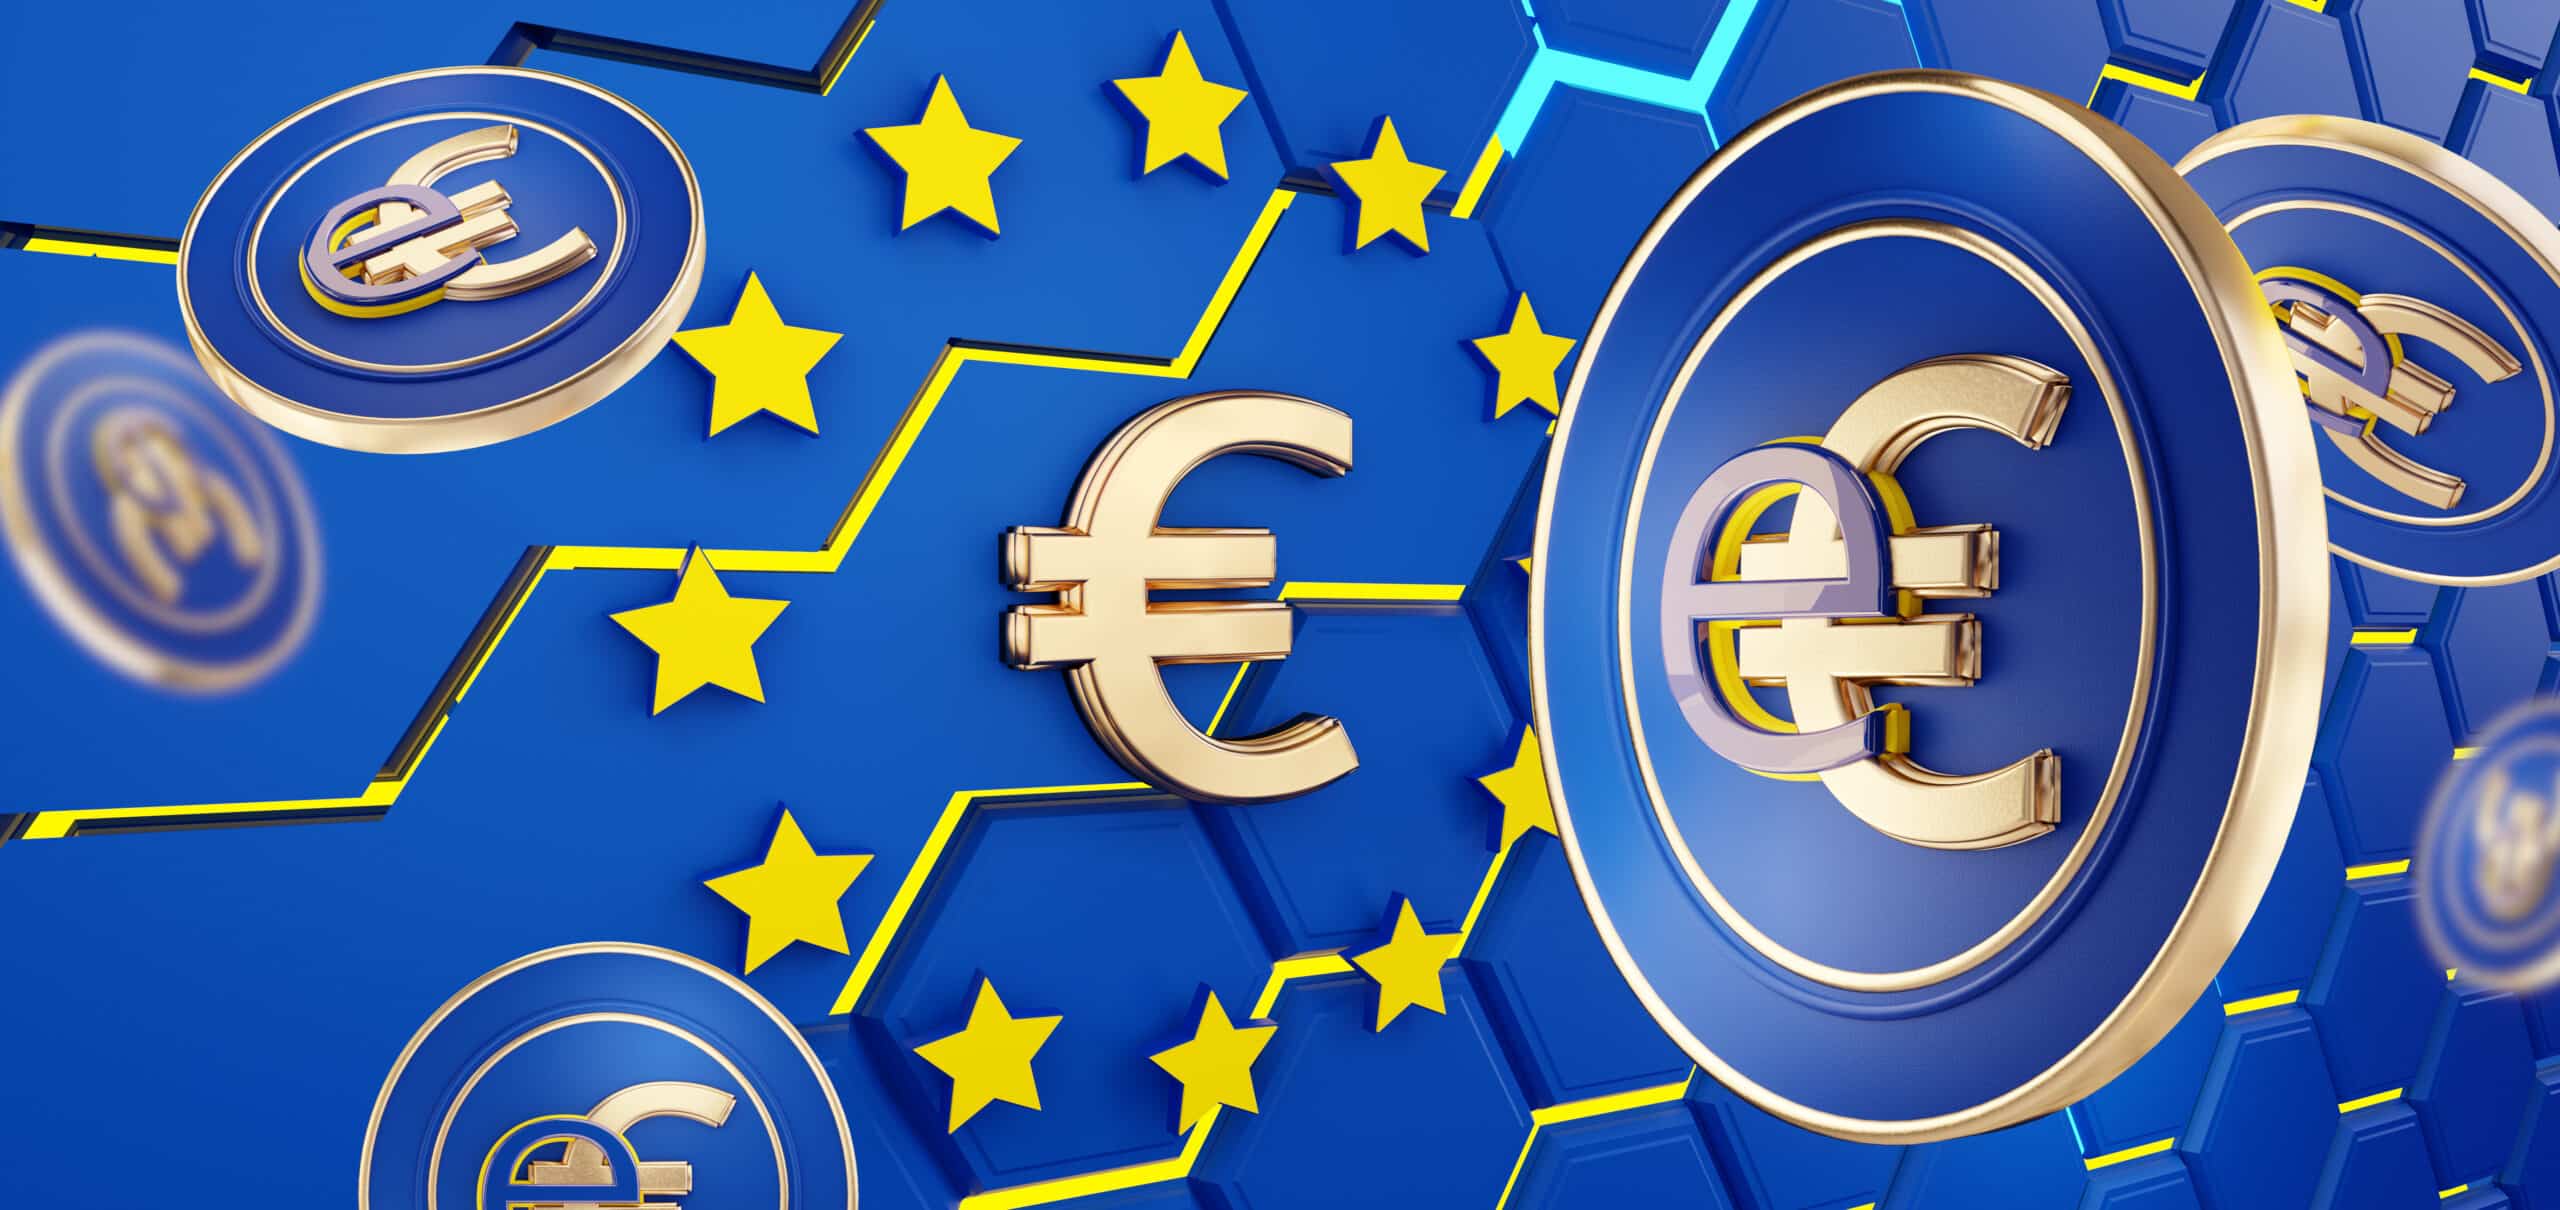 Das Bild zeigt einen digitalen Euro vor einer stilisierten Europaflagge